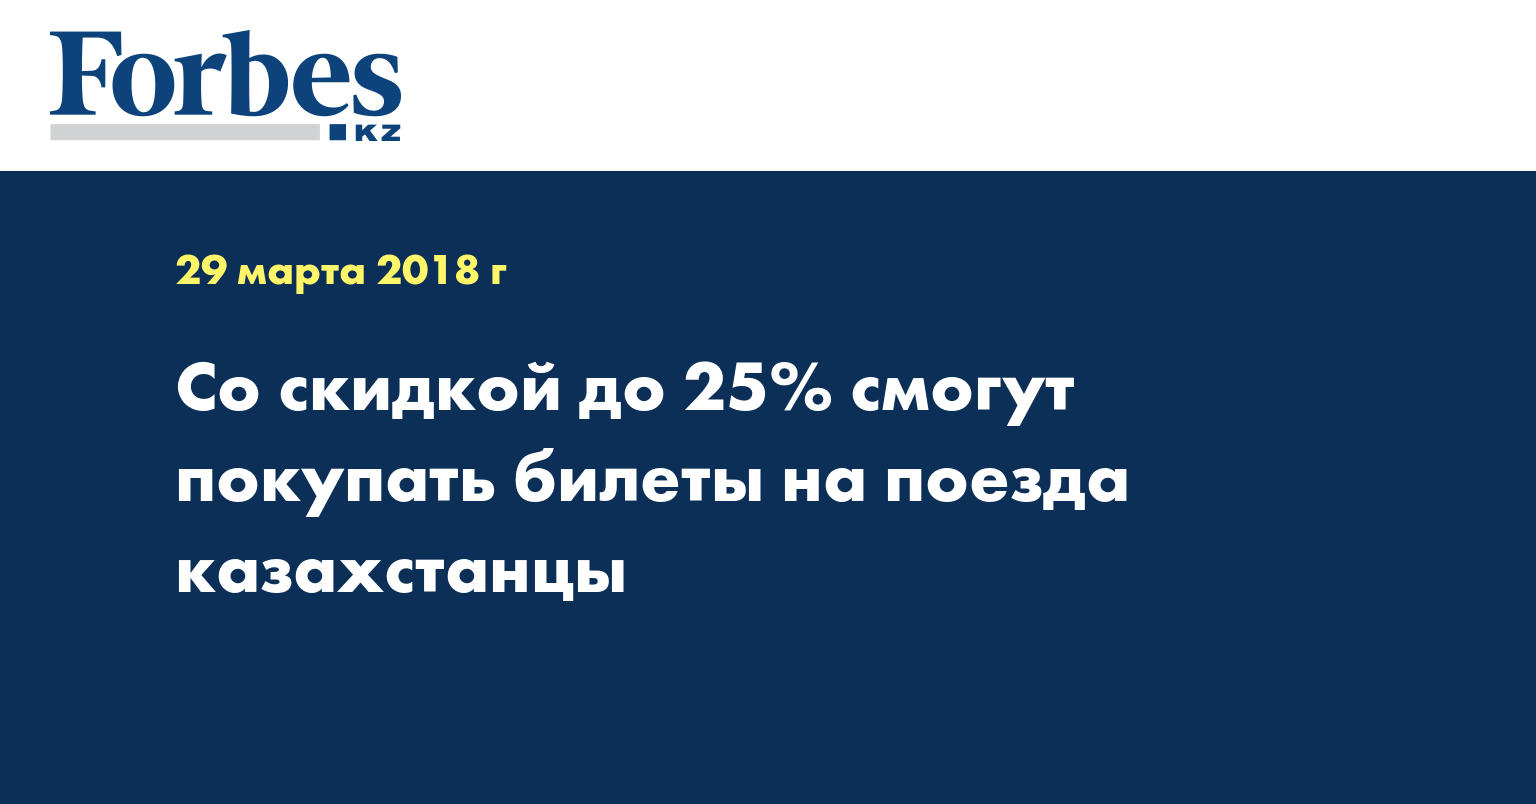 Со скидкой до 25% смогут покупать билеты на поезда казахстанцы